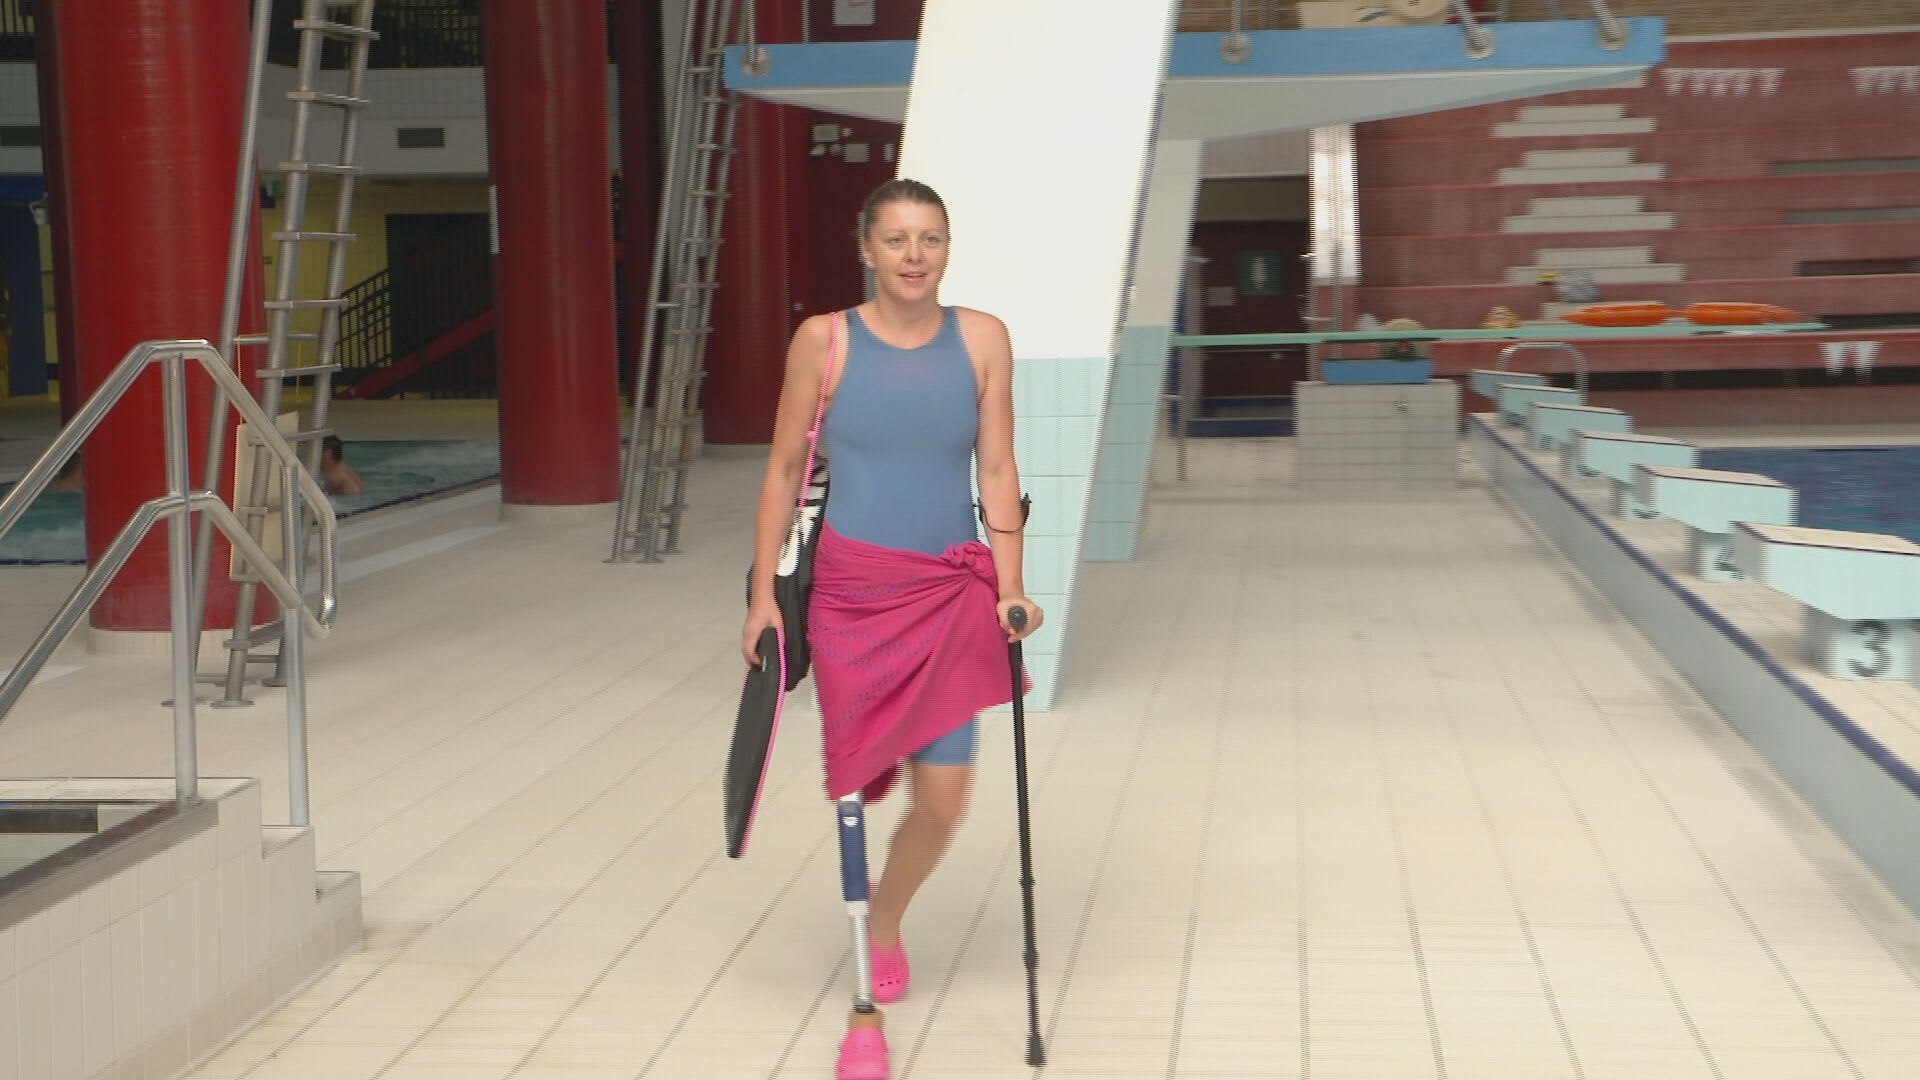 Handicapovaná plavkyně Markéta Pechová svým odhodláním ohromuje svět.